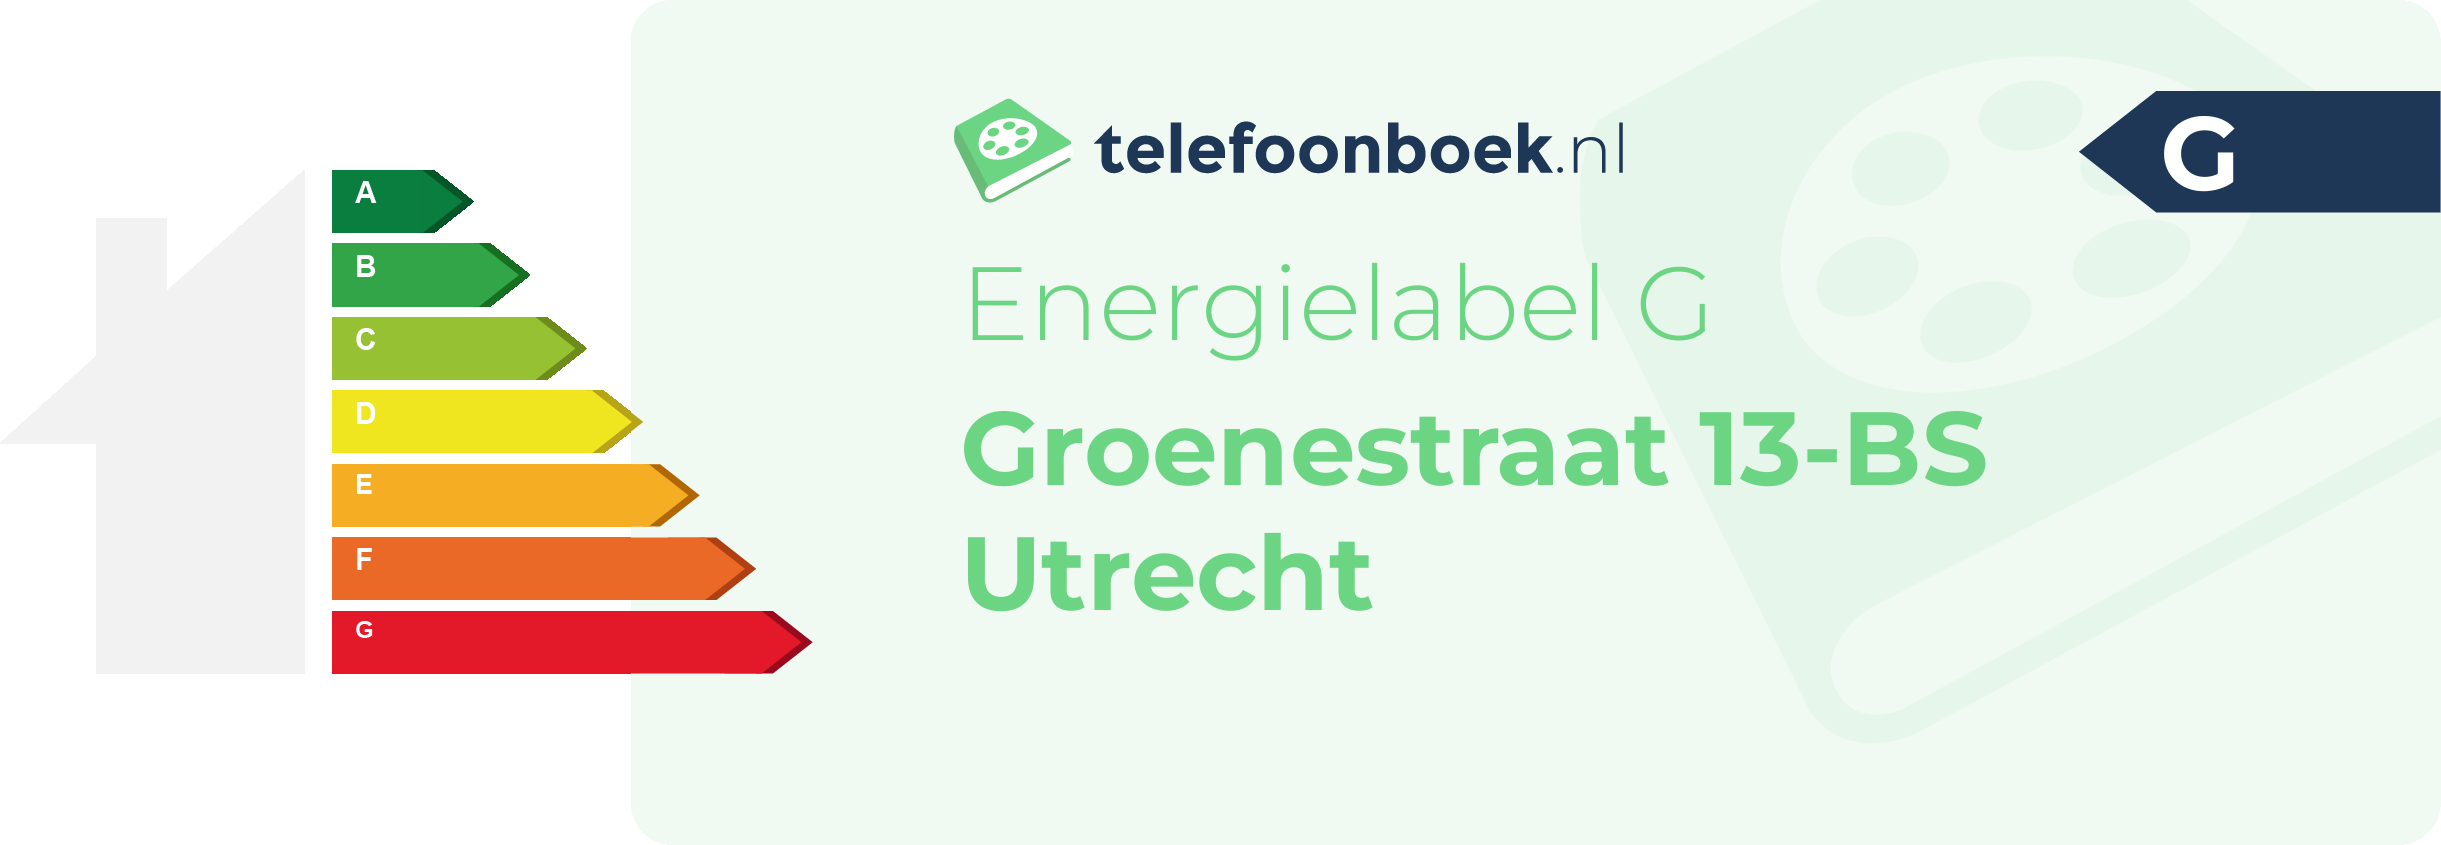 Energielabel Groenestraat 13-BS Utrecht